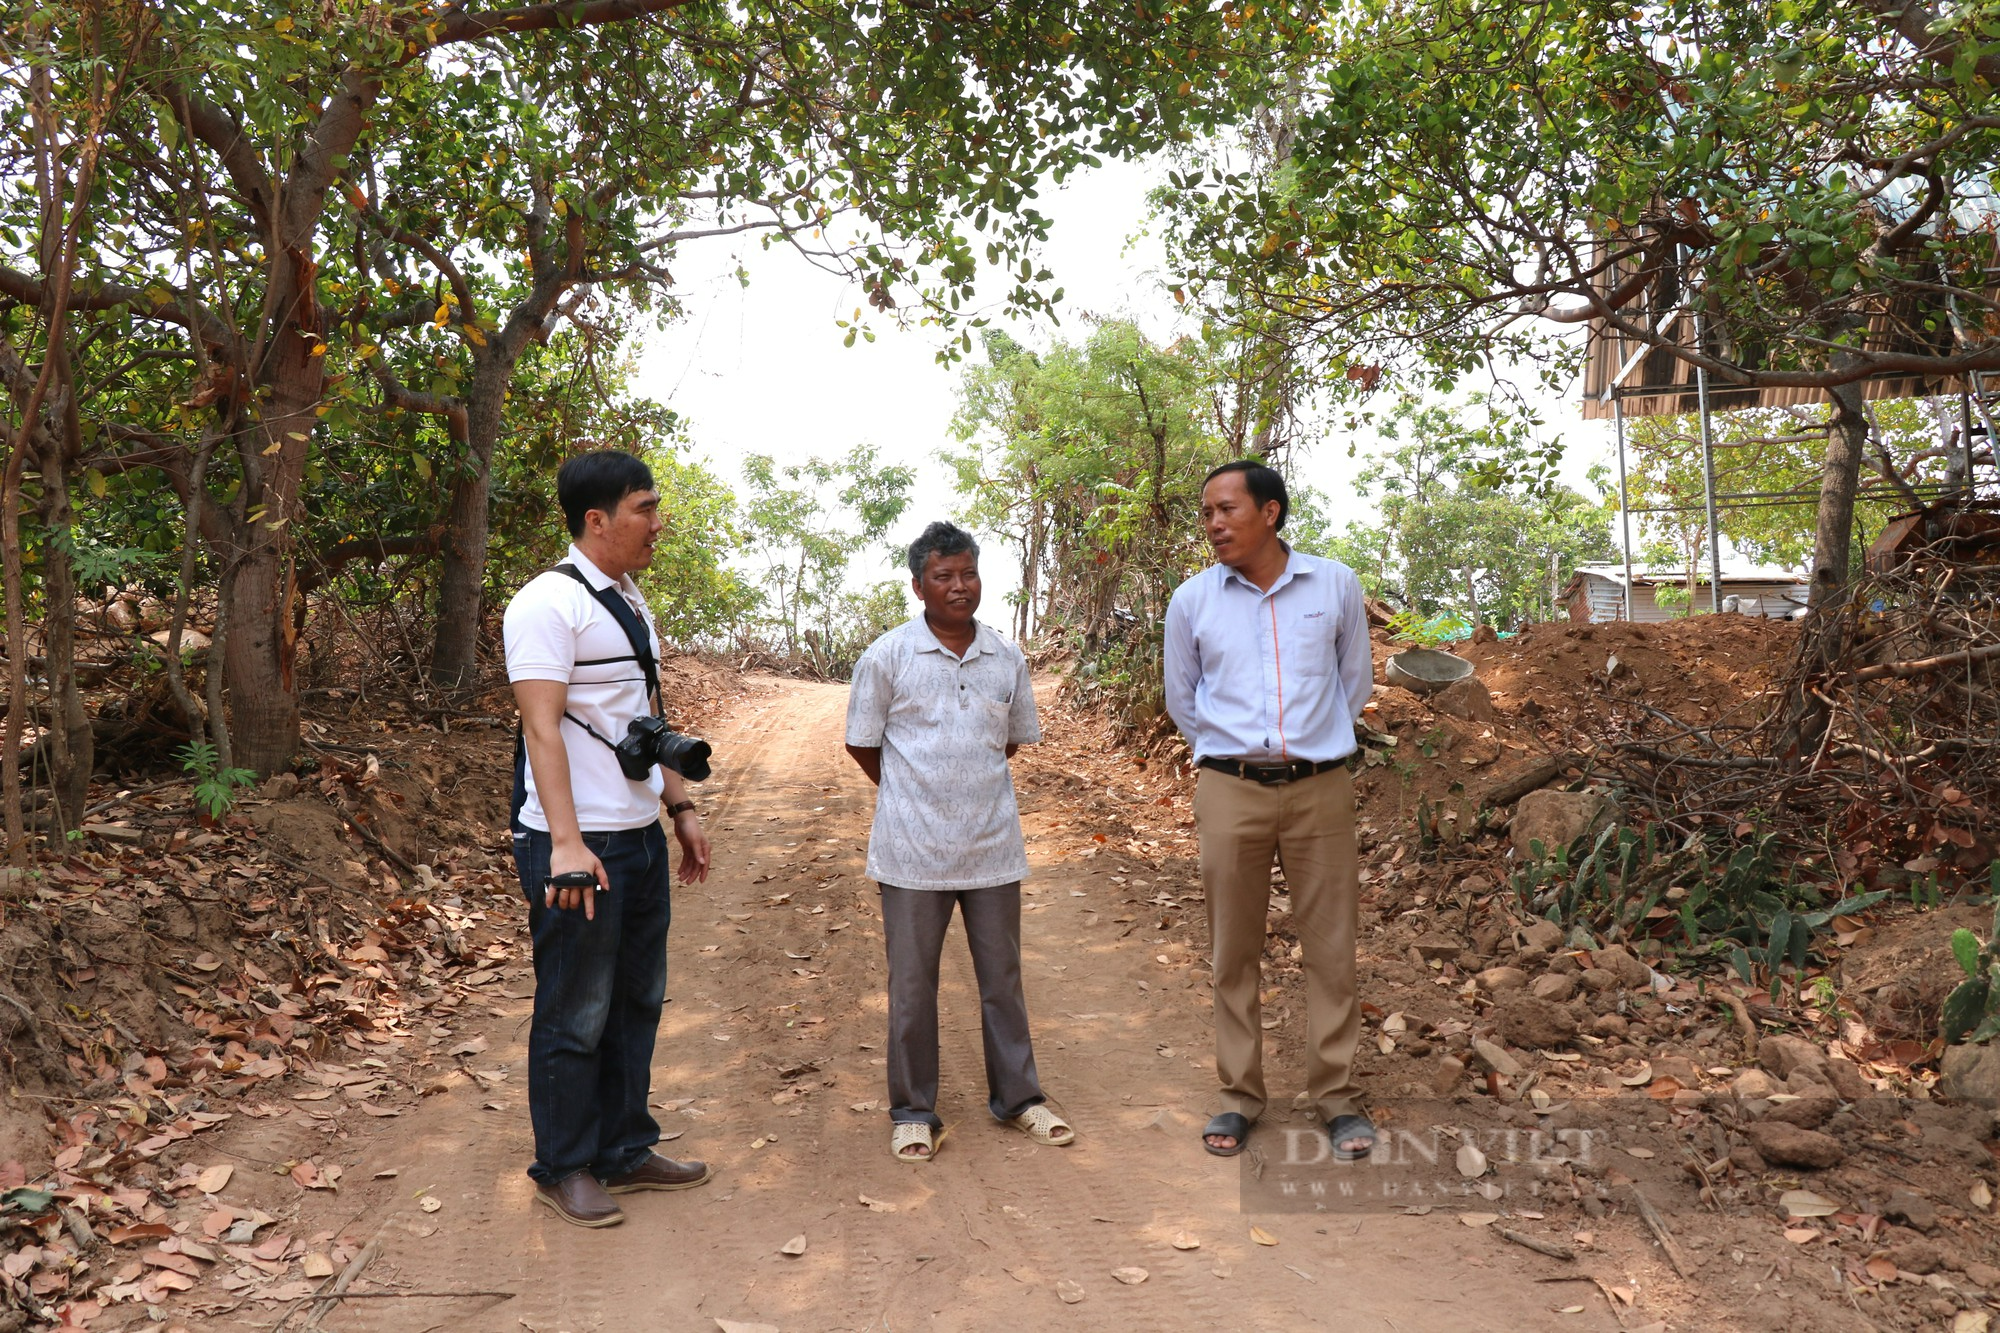 Cuộc sống người Raglai trong Vườn Quốc gia Núi Chúa ở Ninh Thuận: (Kỳ 5) Phát triển kinh tế và xây dựng nông thôn mới - Ảnh 8.